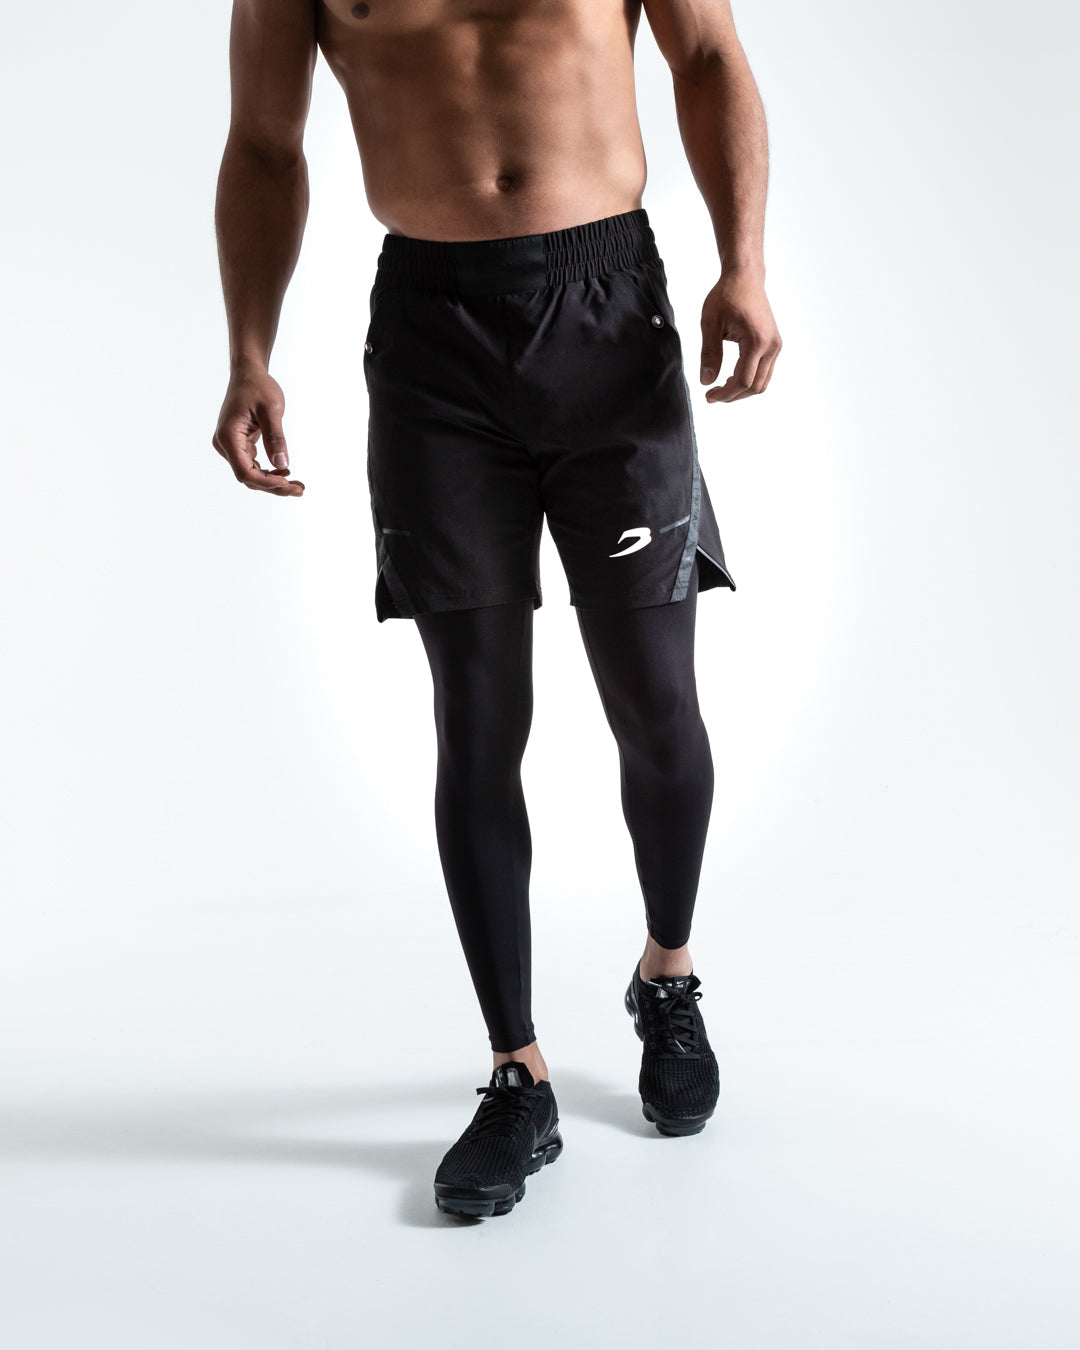 Shorts de training et de Fitness pour Homme. Nike CA